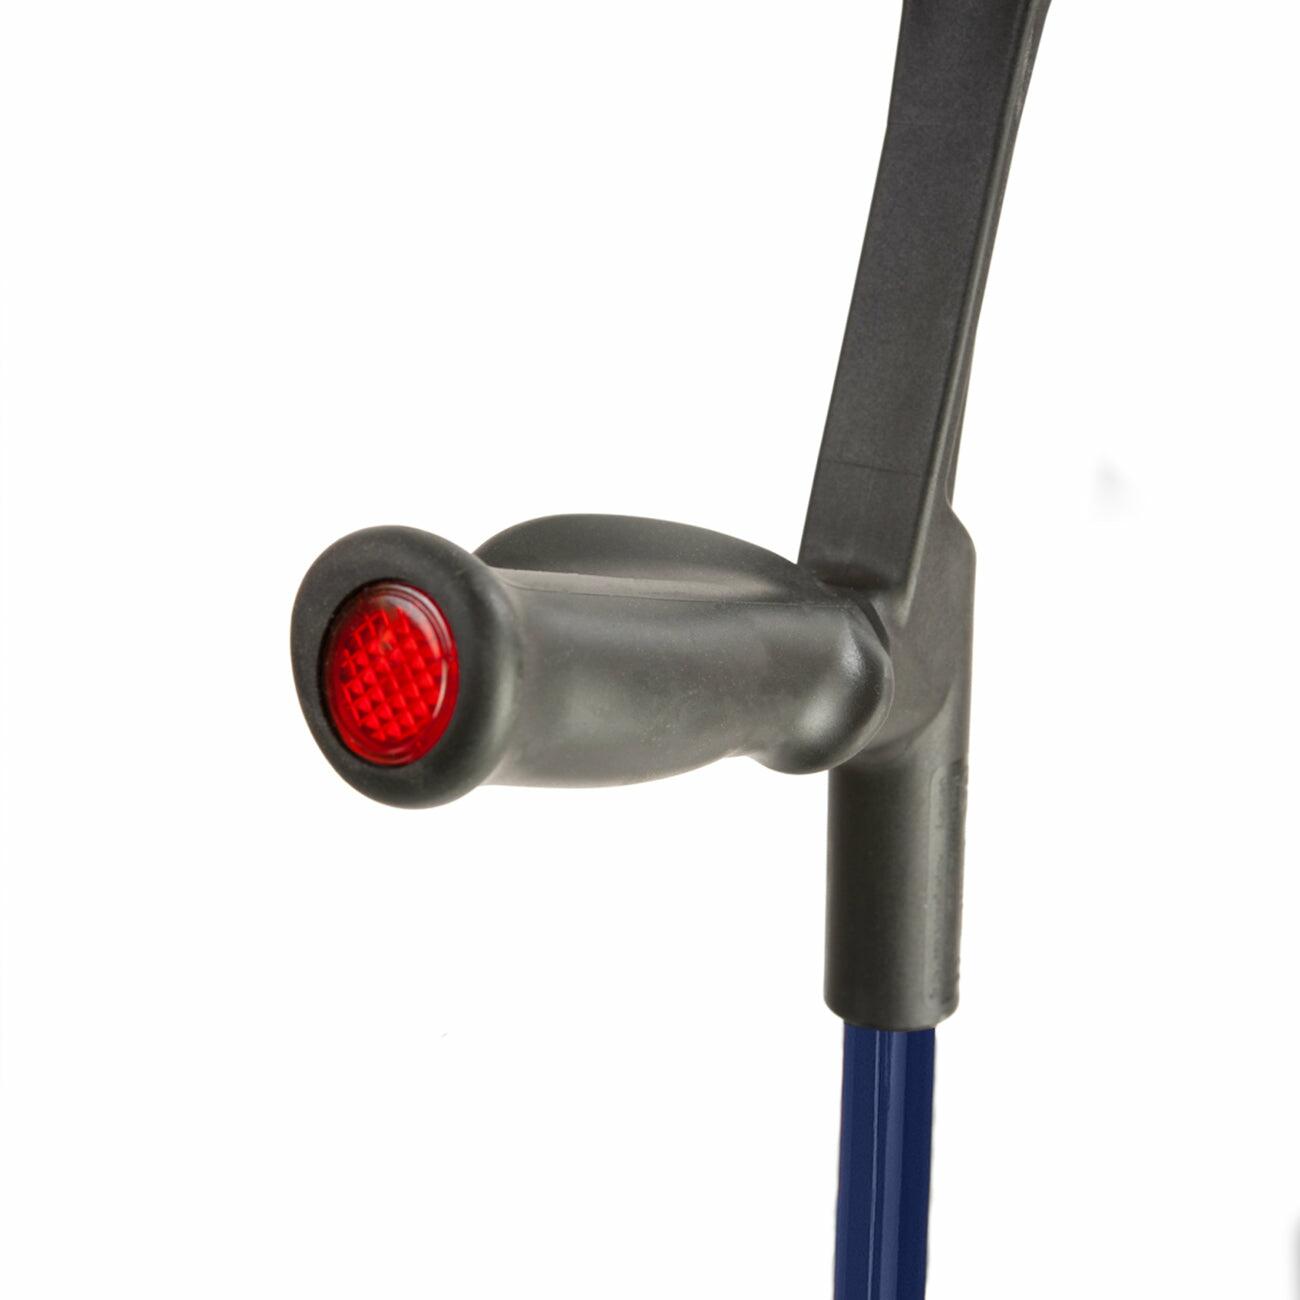 Comfort grip handle of a blue Flexyfoot Comfort Grip Open Cuff Crutch